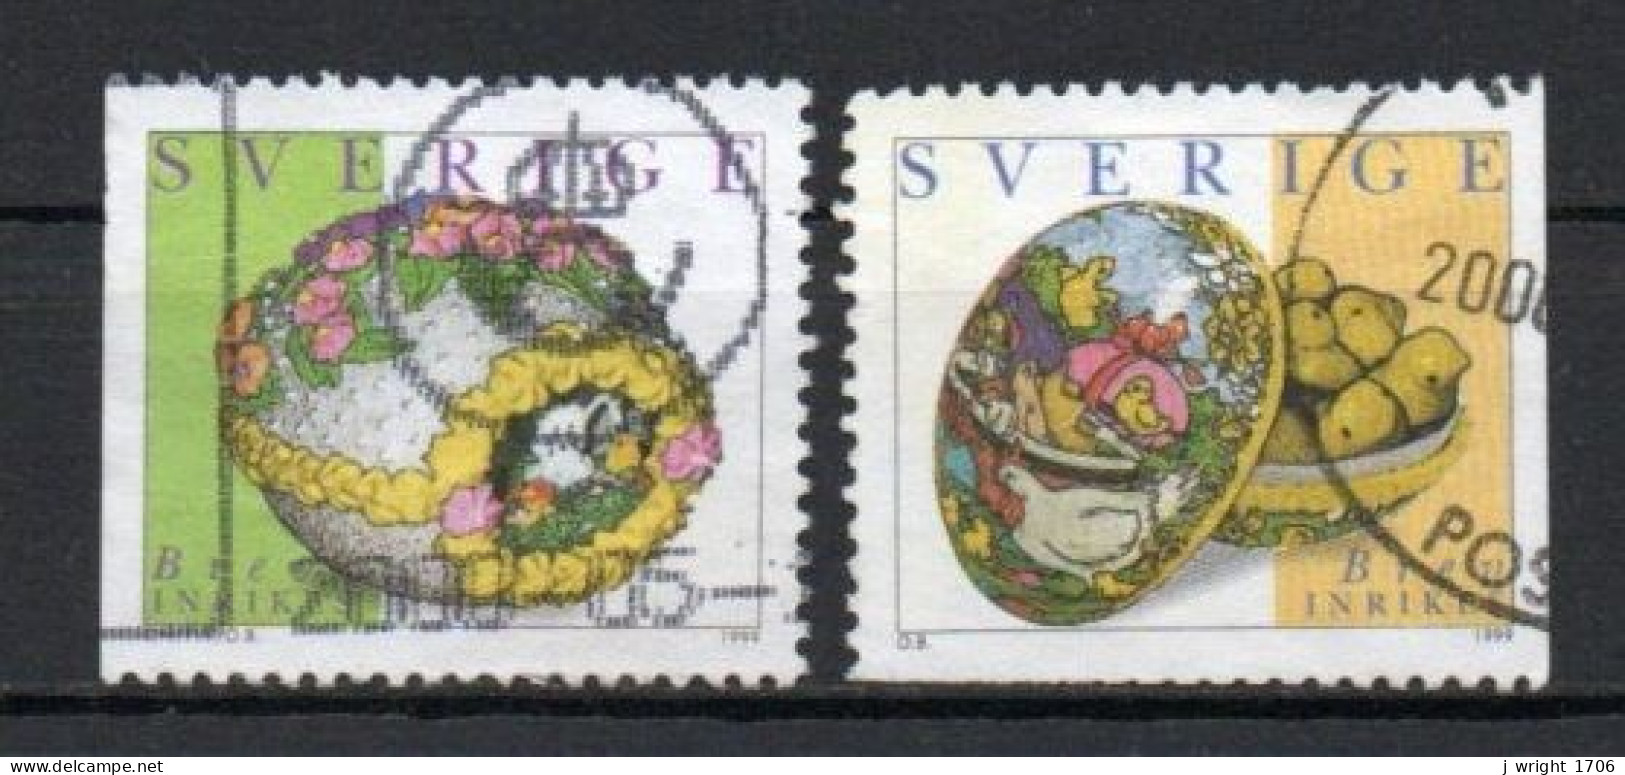 Sweden, 1999, Easter Stamps, Set, USED - Gebraucht